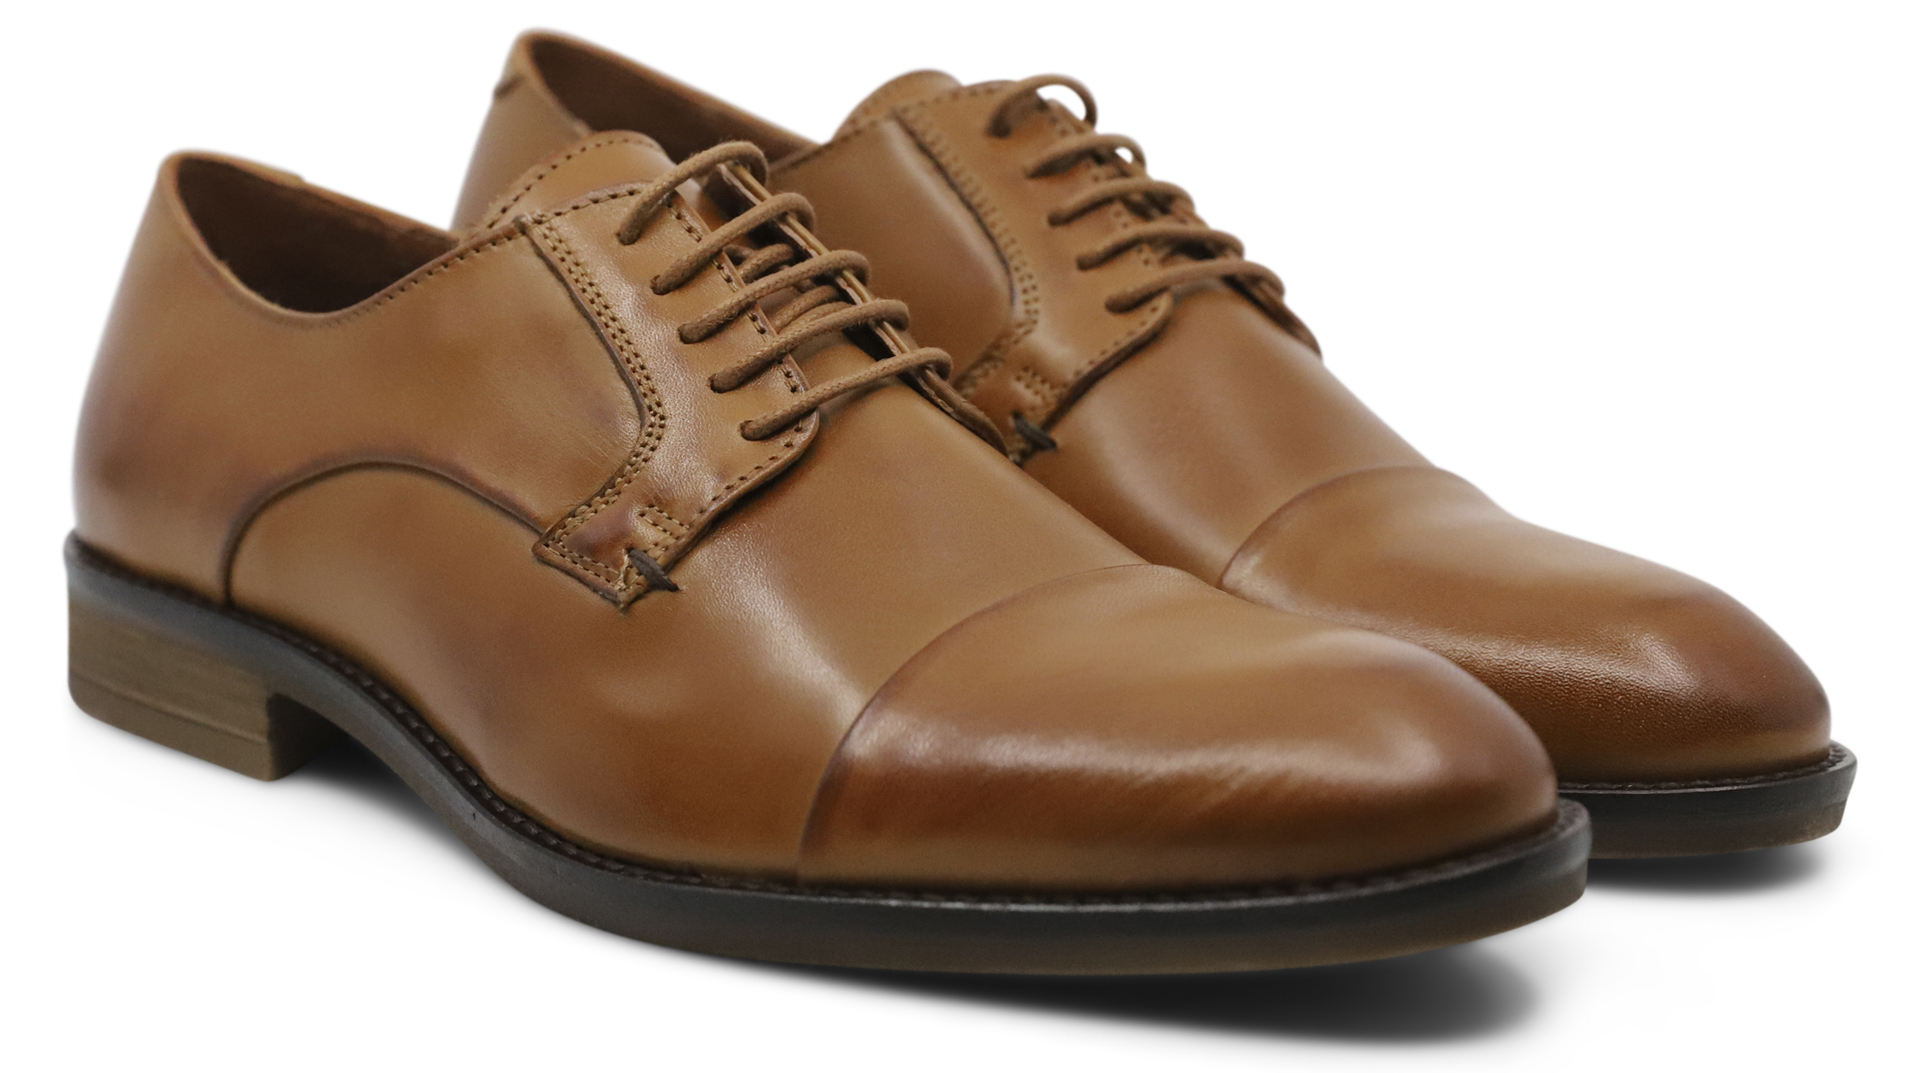 Lindbergh Lace-up shoes brown / cognac